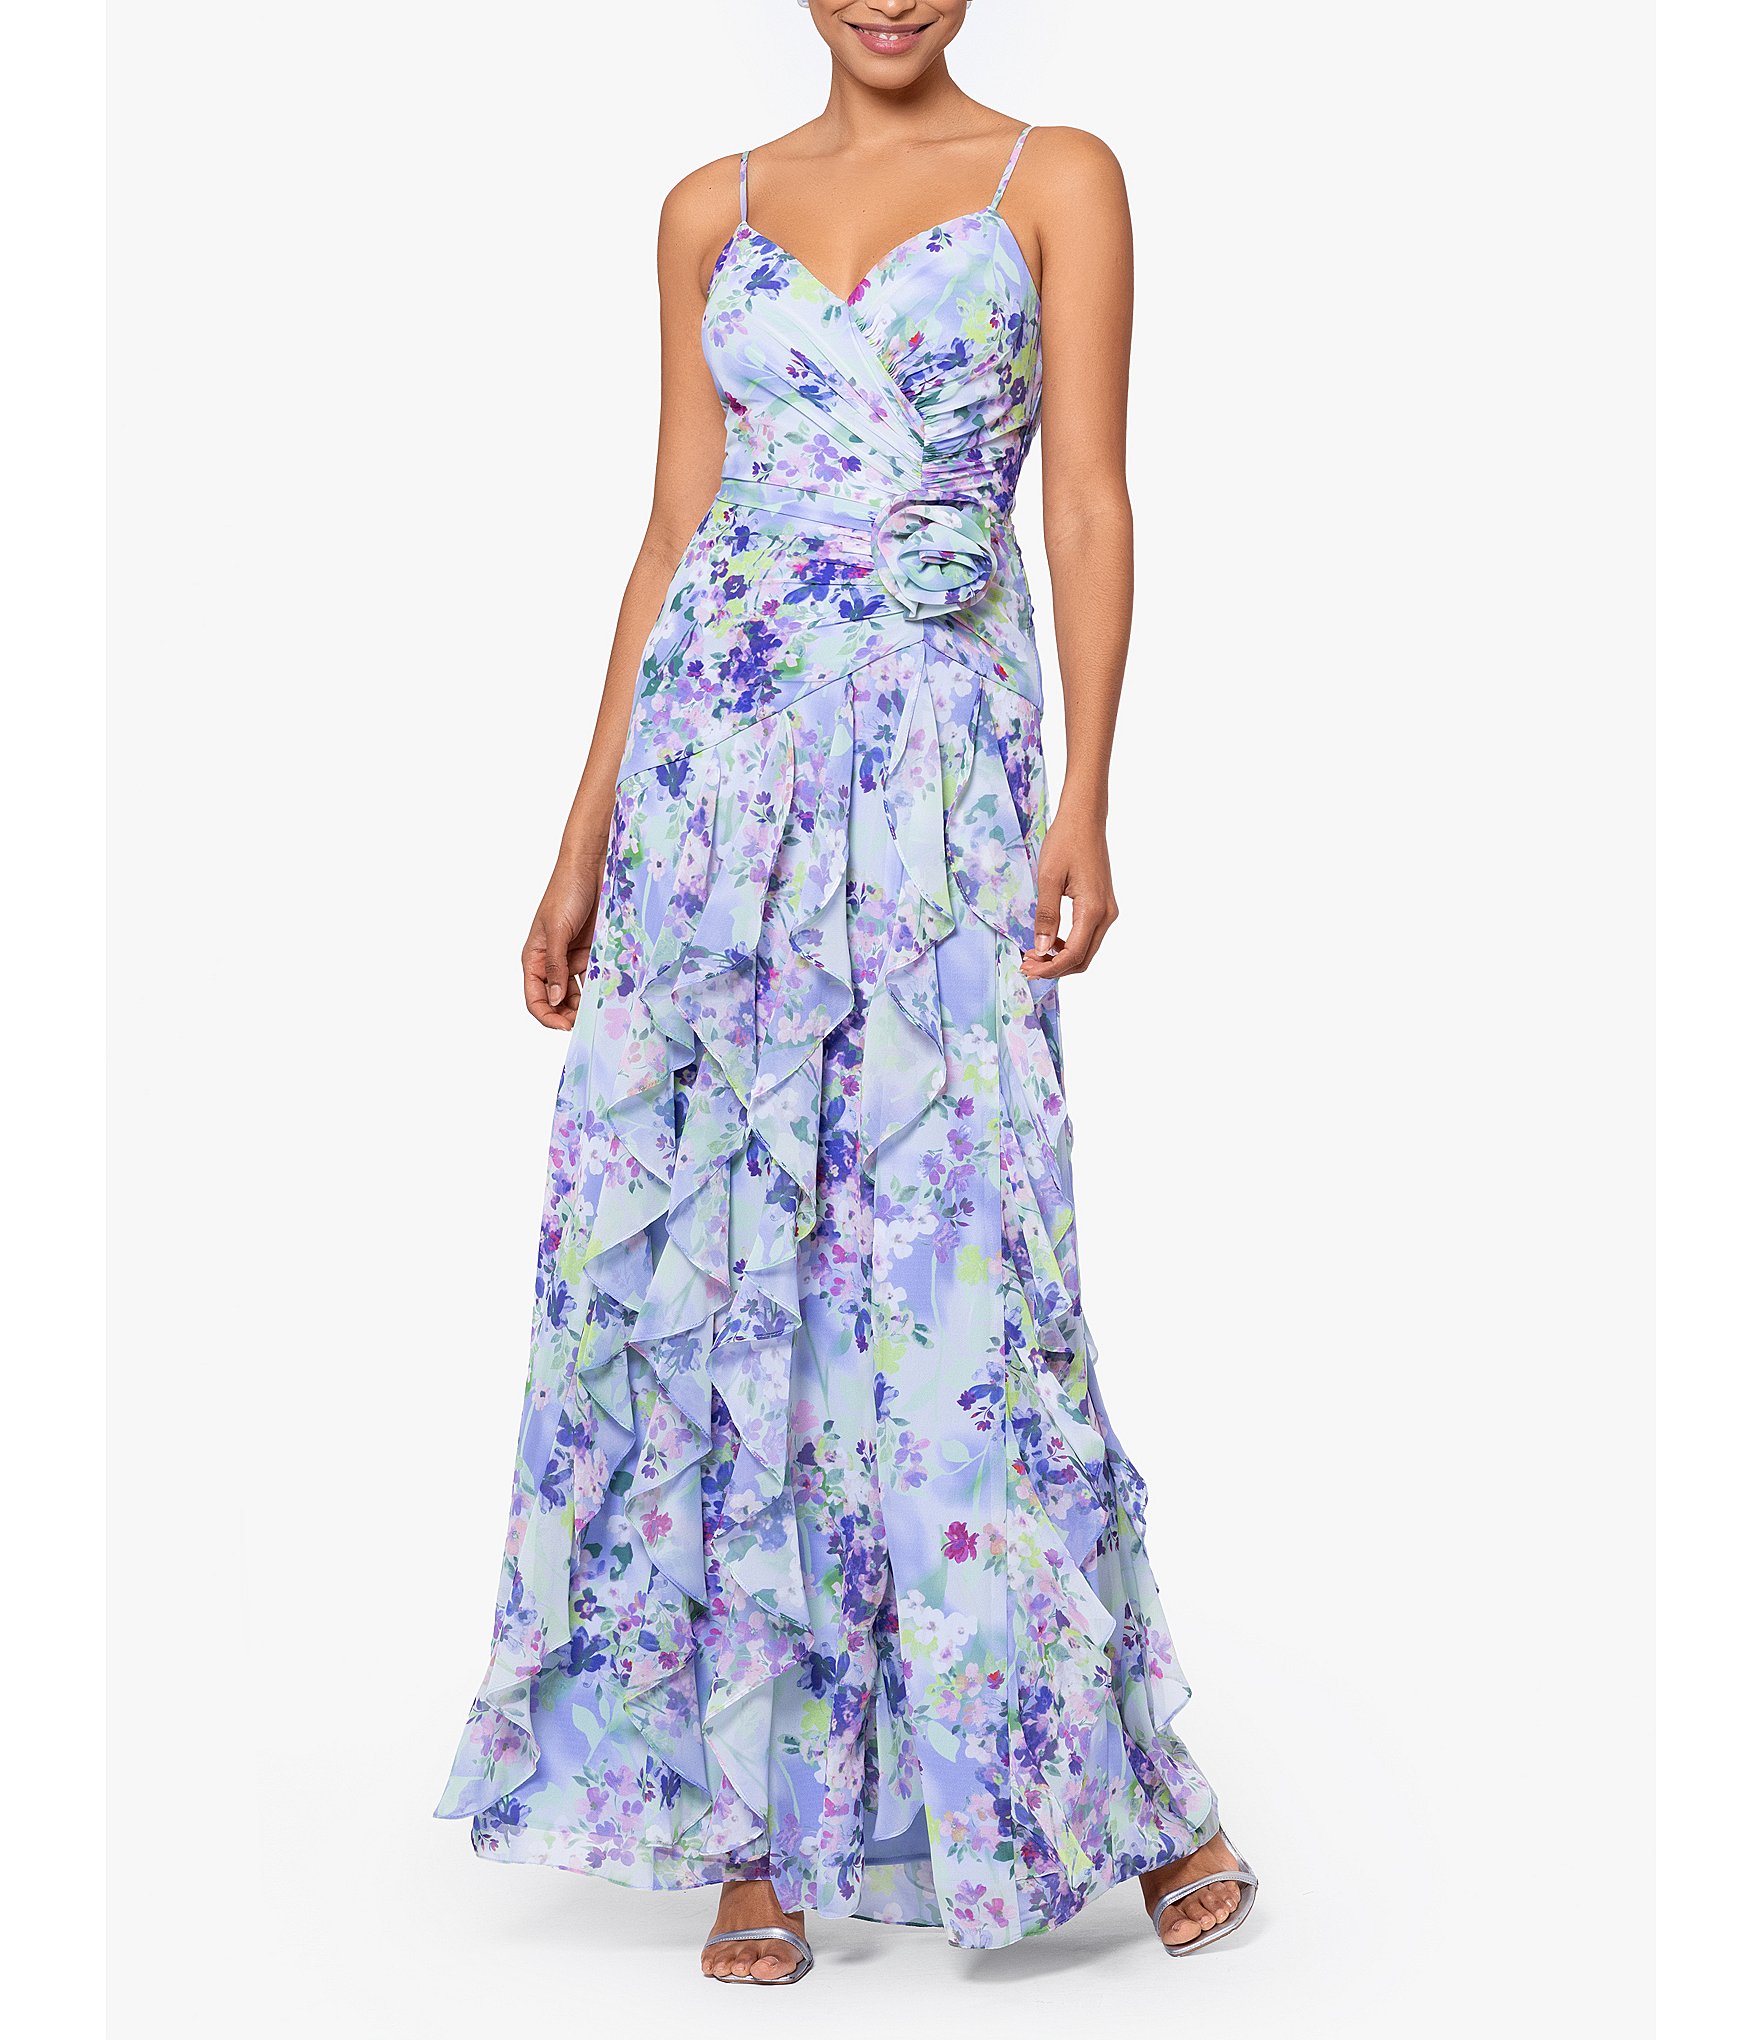 blush dress: Women's Formal Dresses & Evening Gowns | Dillard's